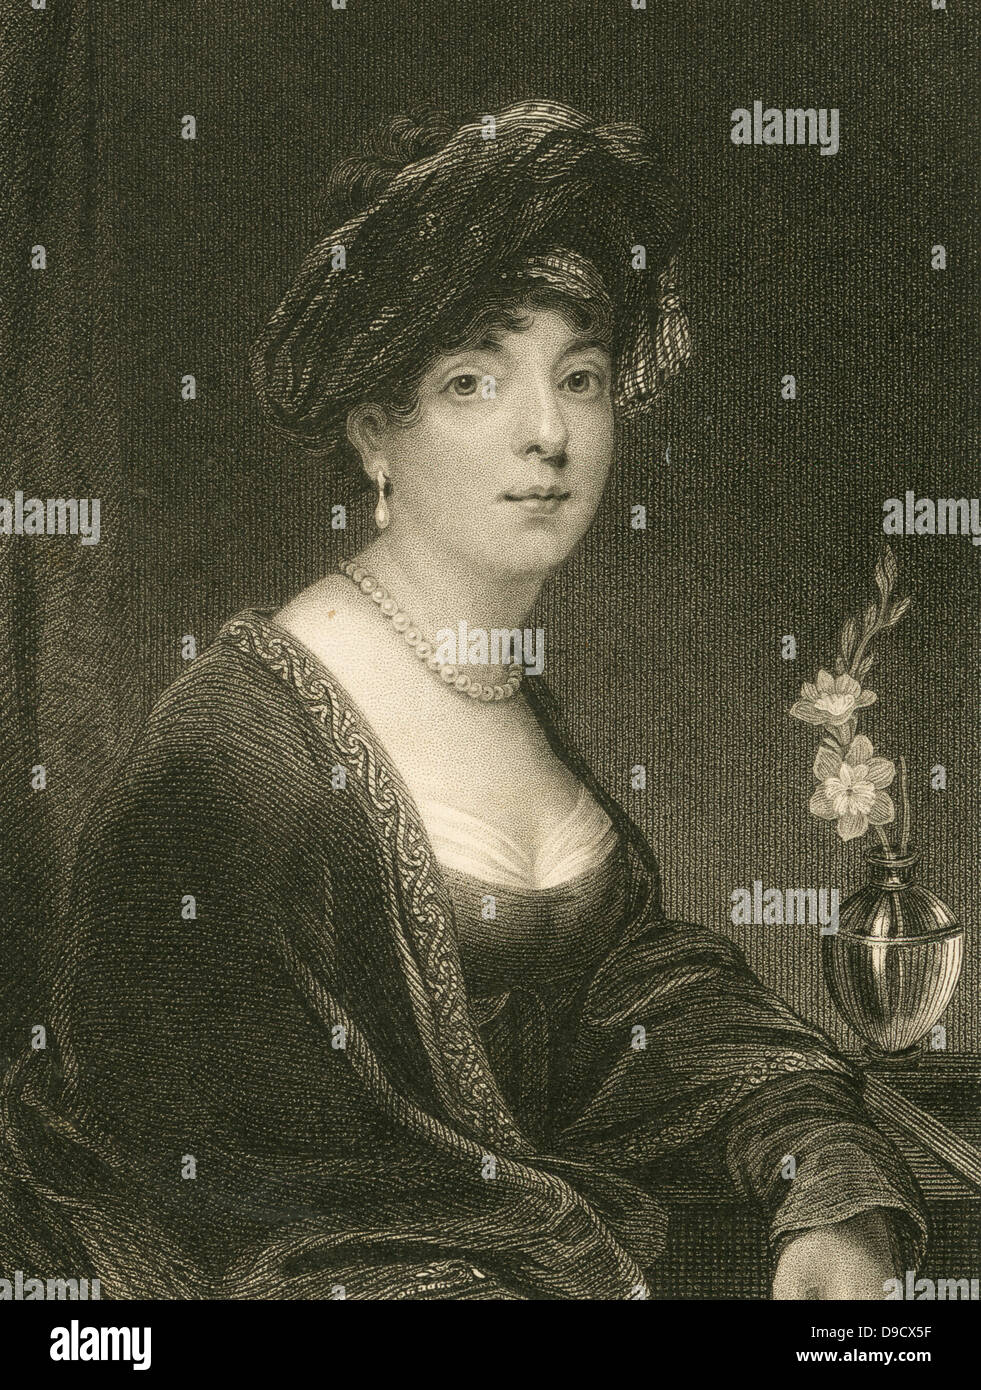 Elisabeth Sutherland Leveson-Gower, Gräfin von Sutherland und Marquise von Stafford (1765-1839), geborene Elizabeth Gordon, Schottische peeress. Für die Highland Clearances verantwortlich Einkommen von Ihrem schottischen zu verbessern. Gravur. Stockfoto